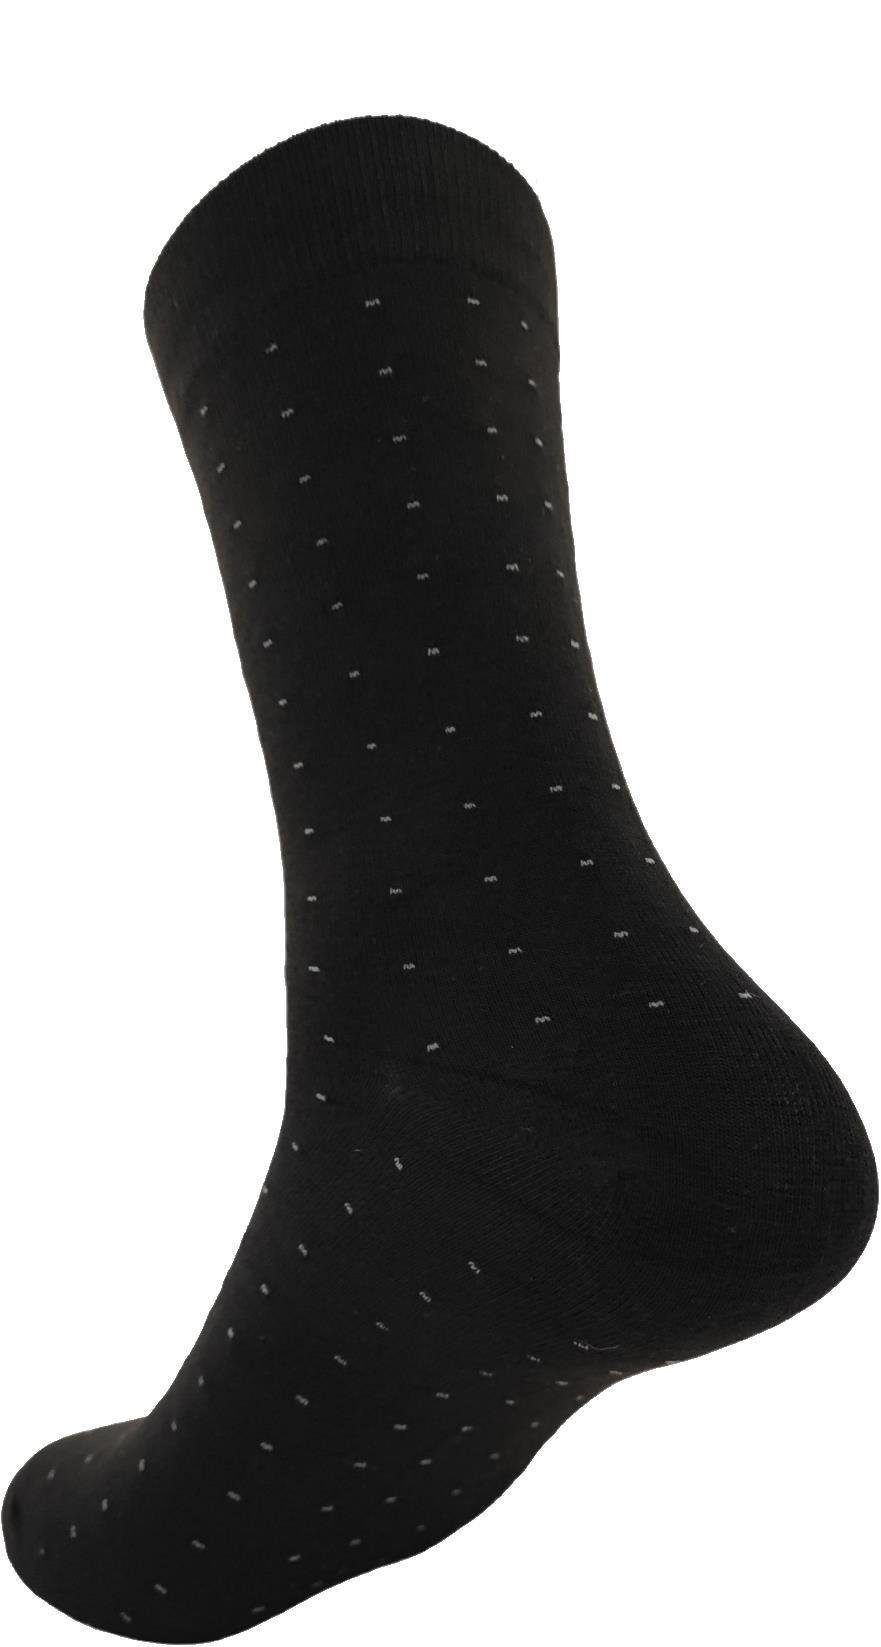 Muster (12-Paar) Basicsocken 12 Mix2 klassischer Freizeit Sport EloModa Herren Socken Paar Form